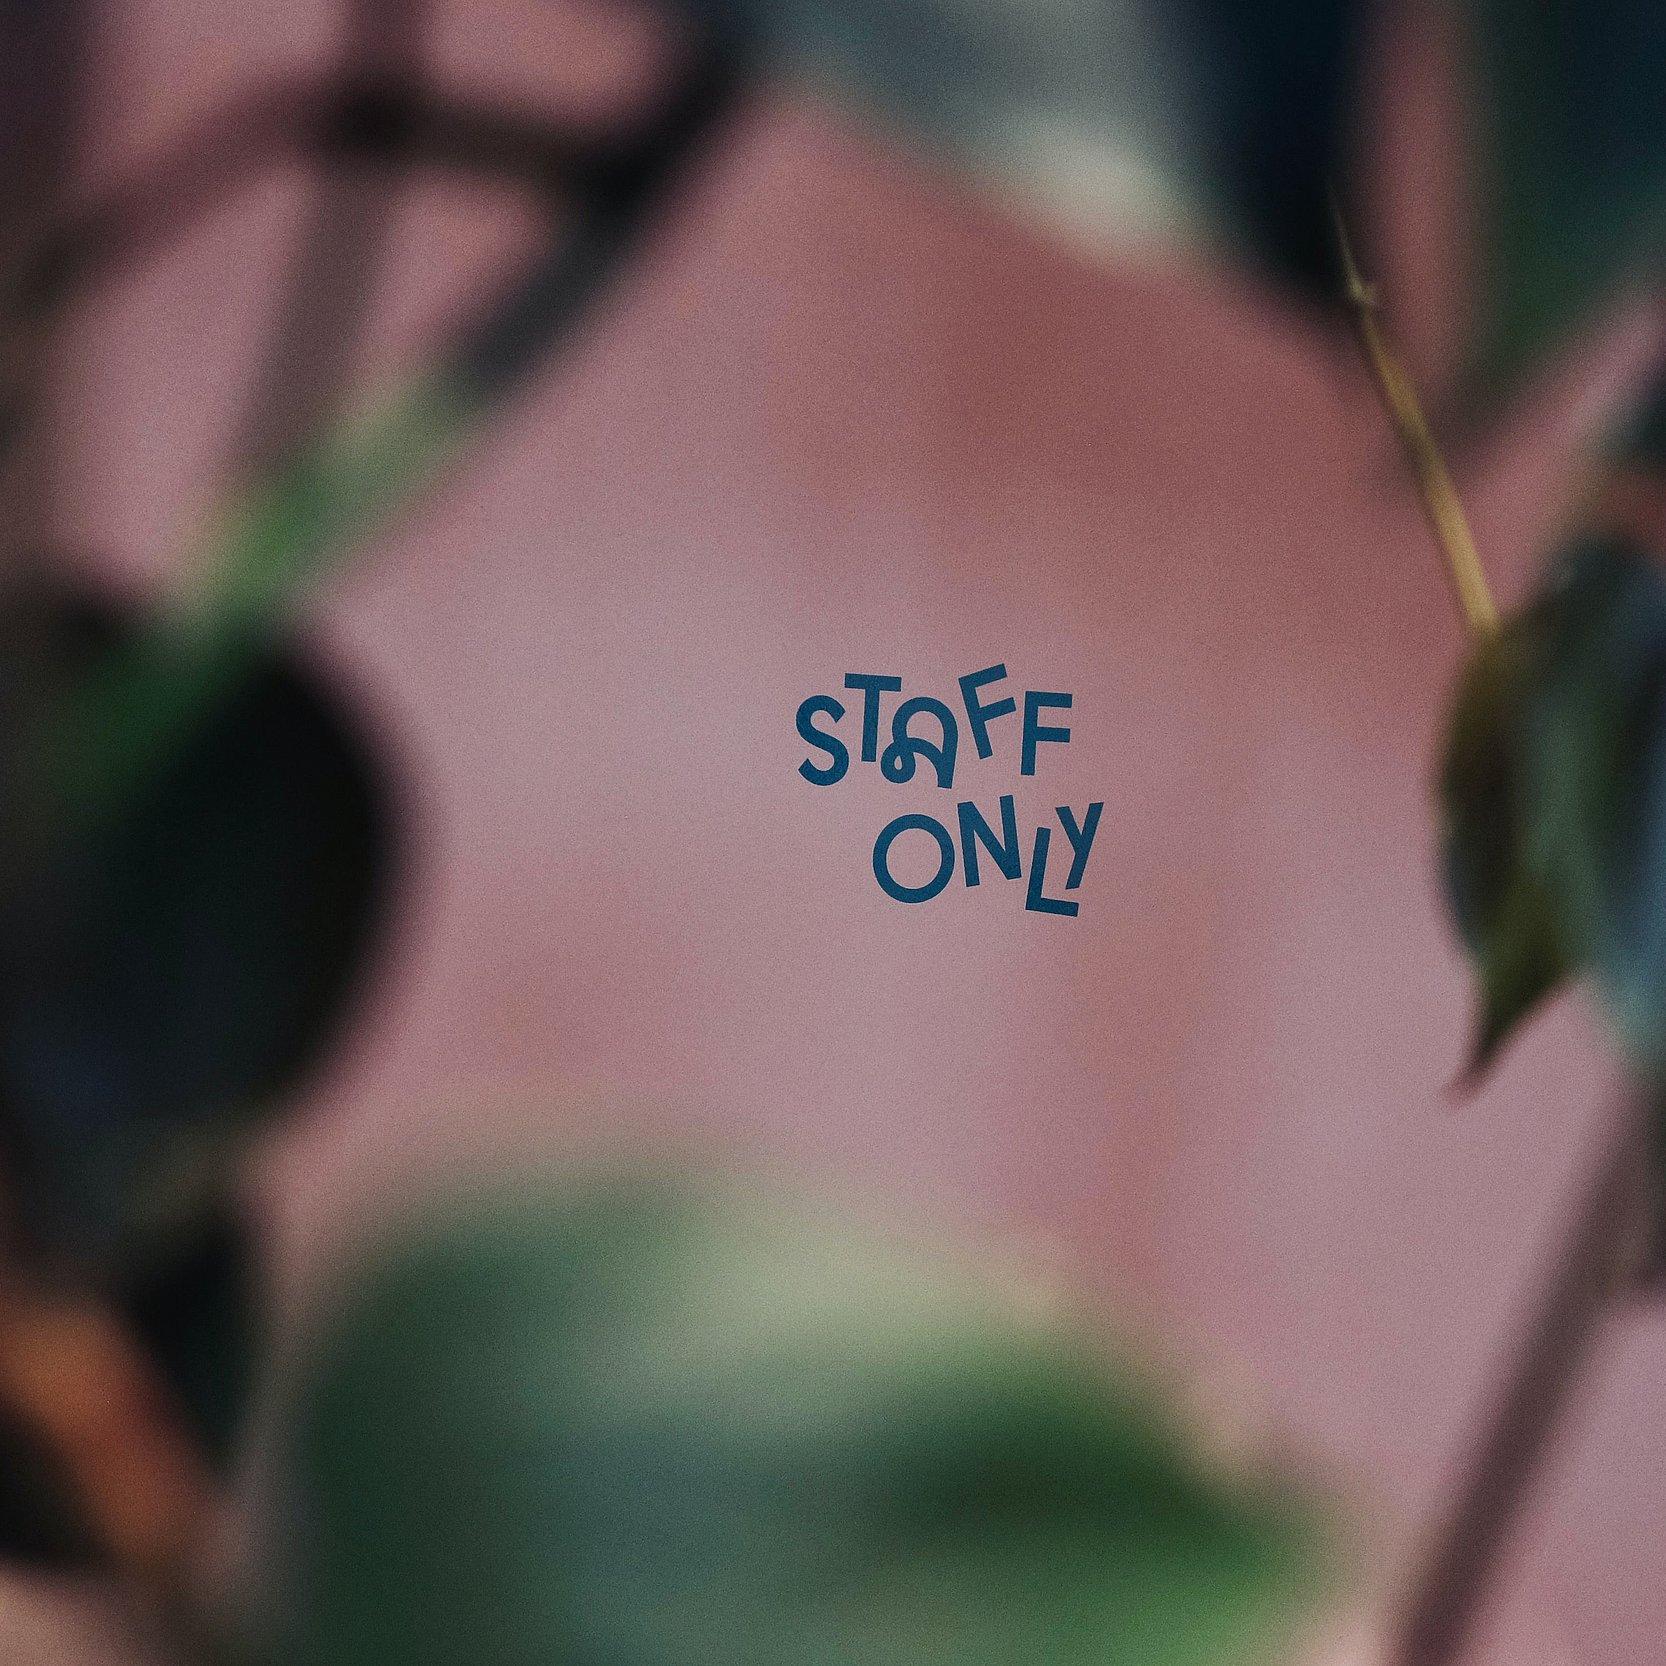 Rosa Wand mit Blättern, darauf steht "Staff only".